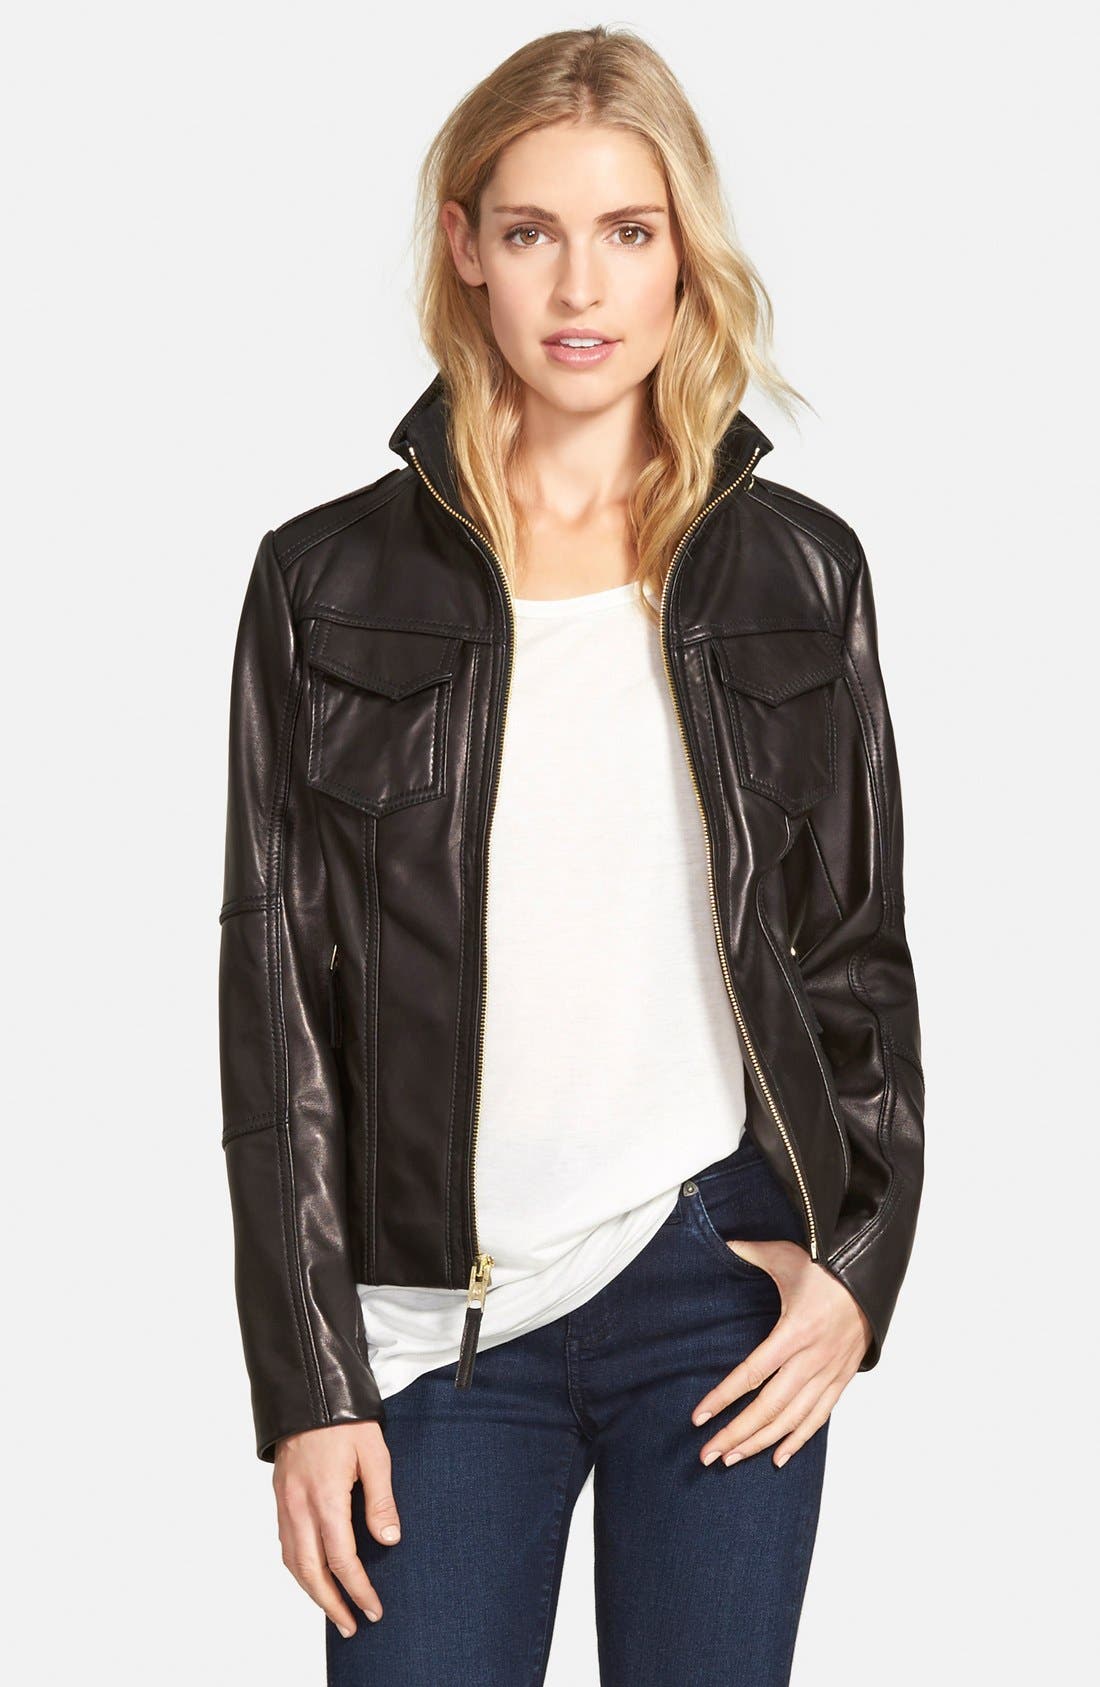 michael kors ladies leather jacket